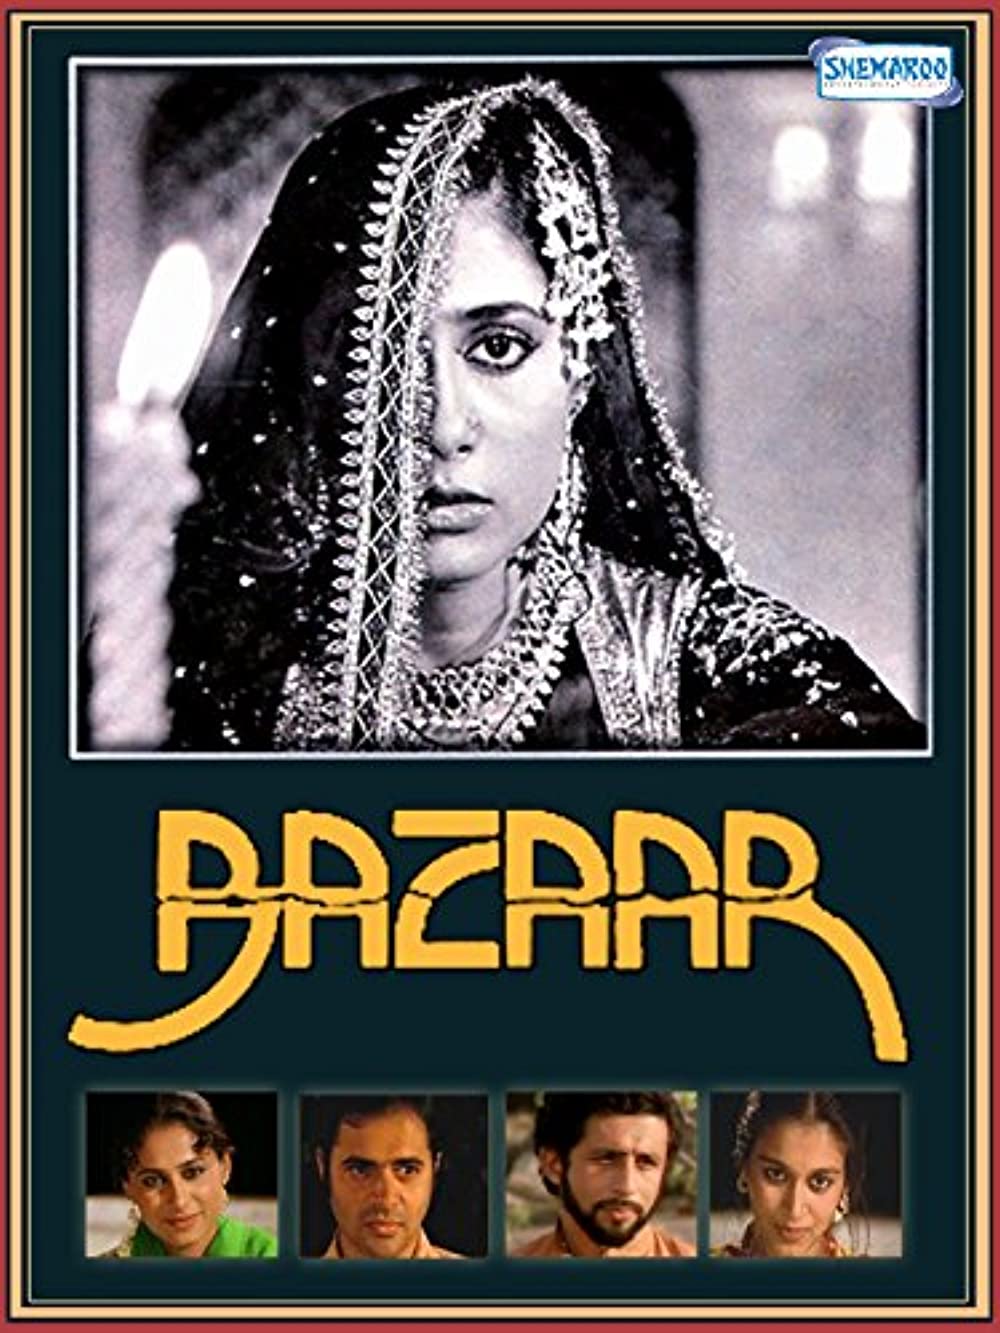 bazaar-1982-18550-poster.jpg